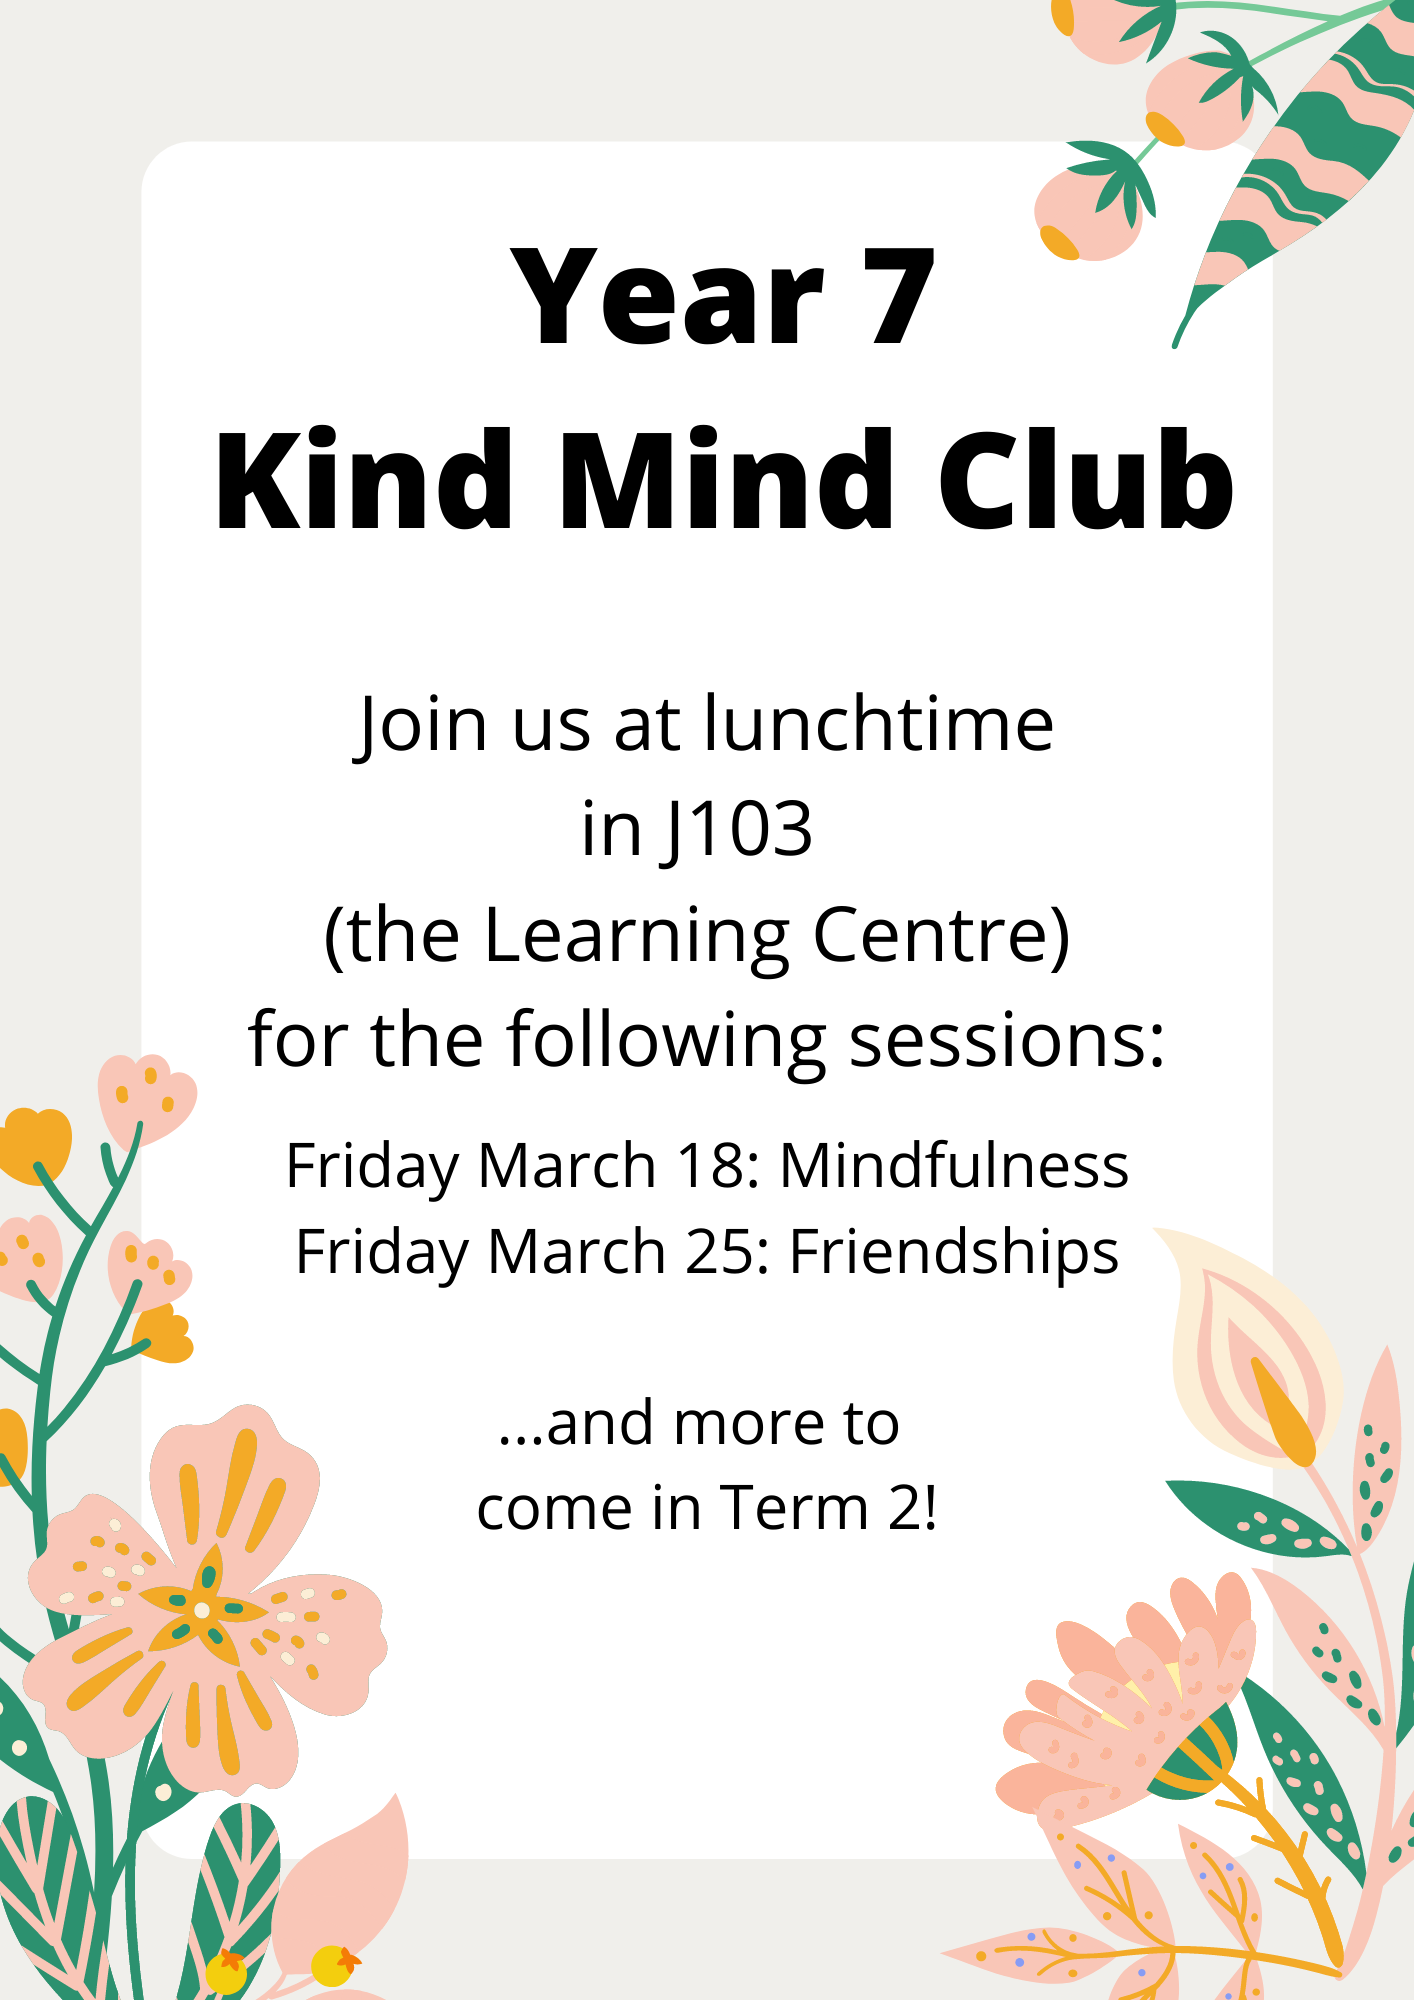 Year 7 Kind Mind Club